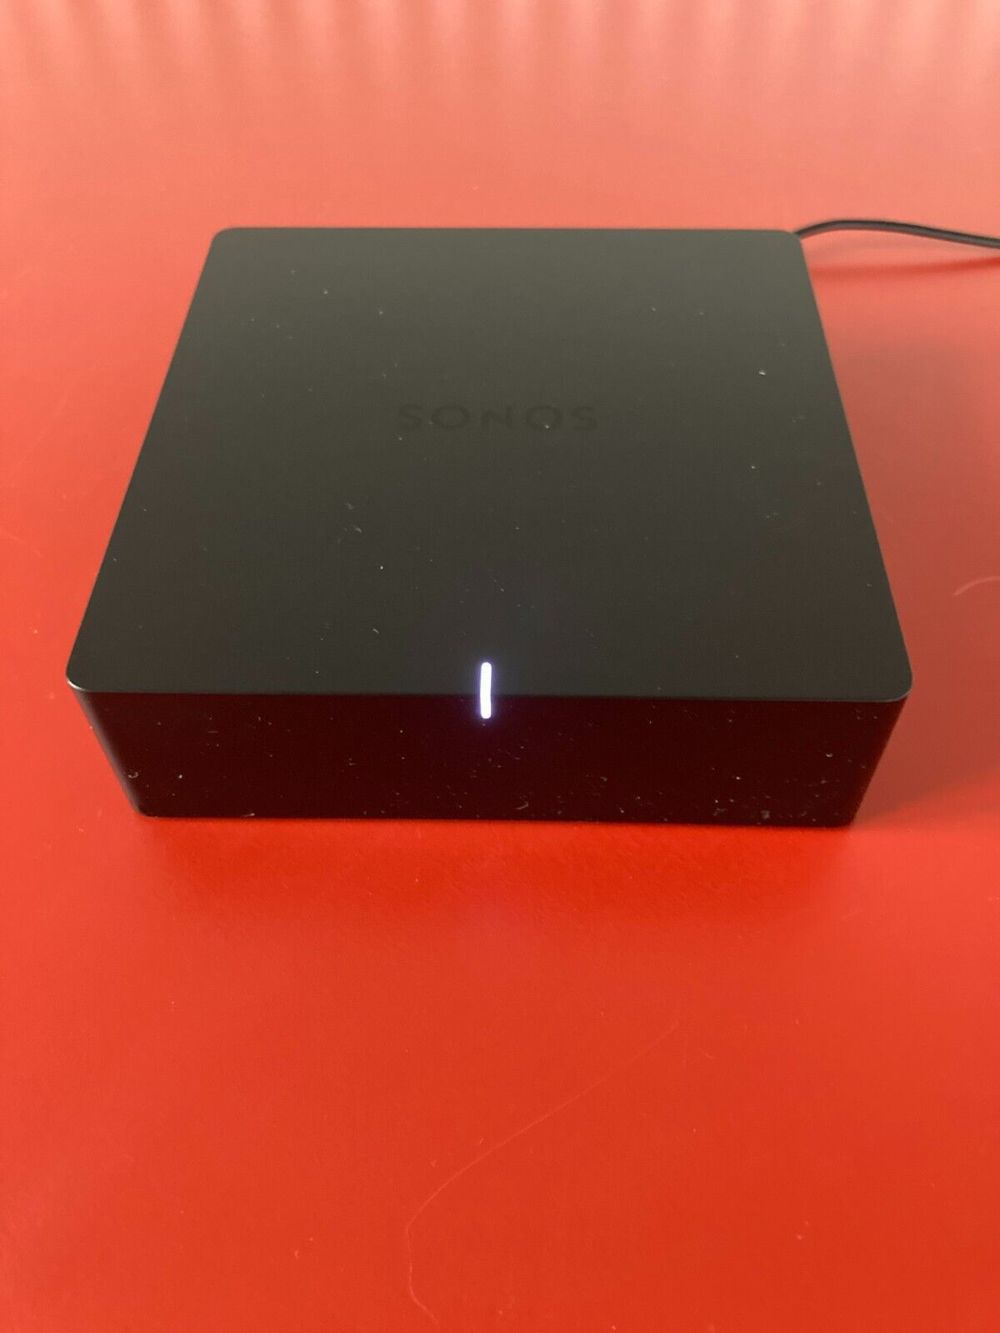  Sonos Port - schwarz - sehr guter Zustand in Originalverpackung